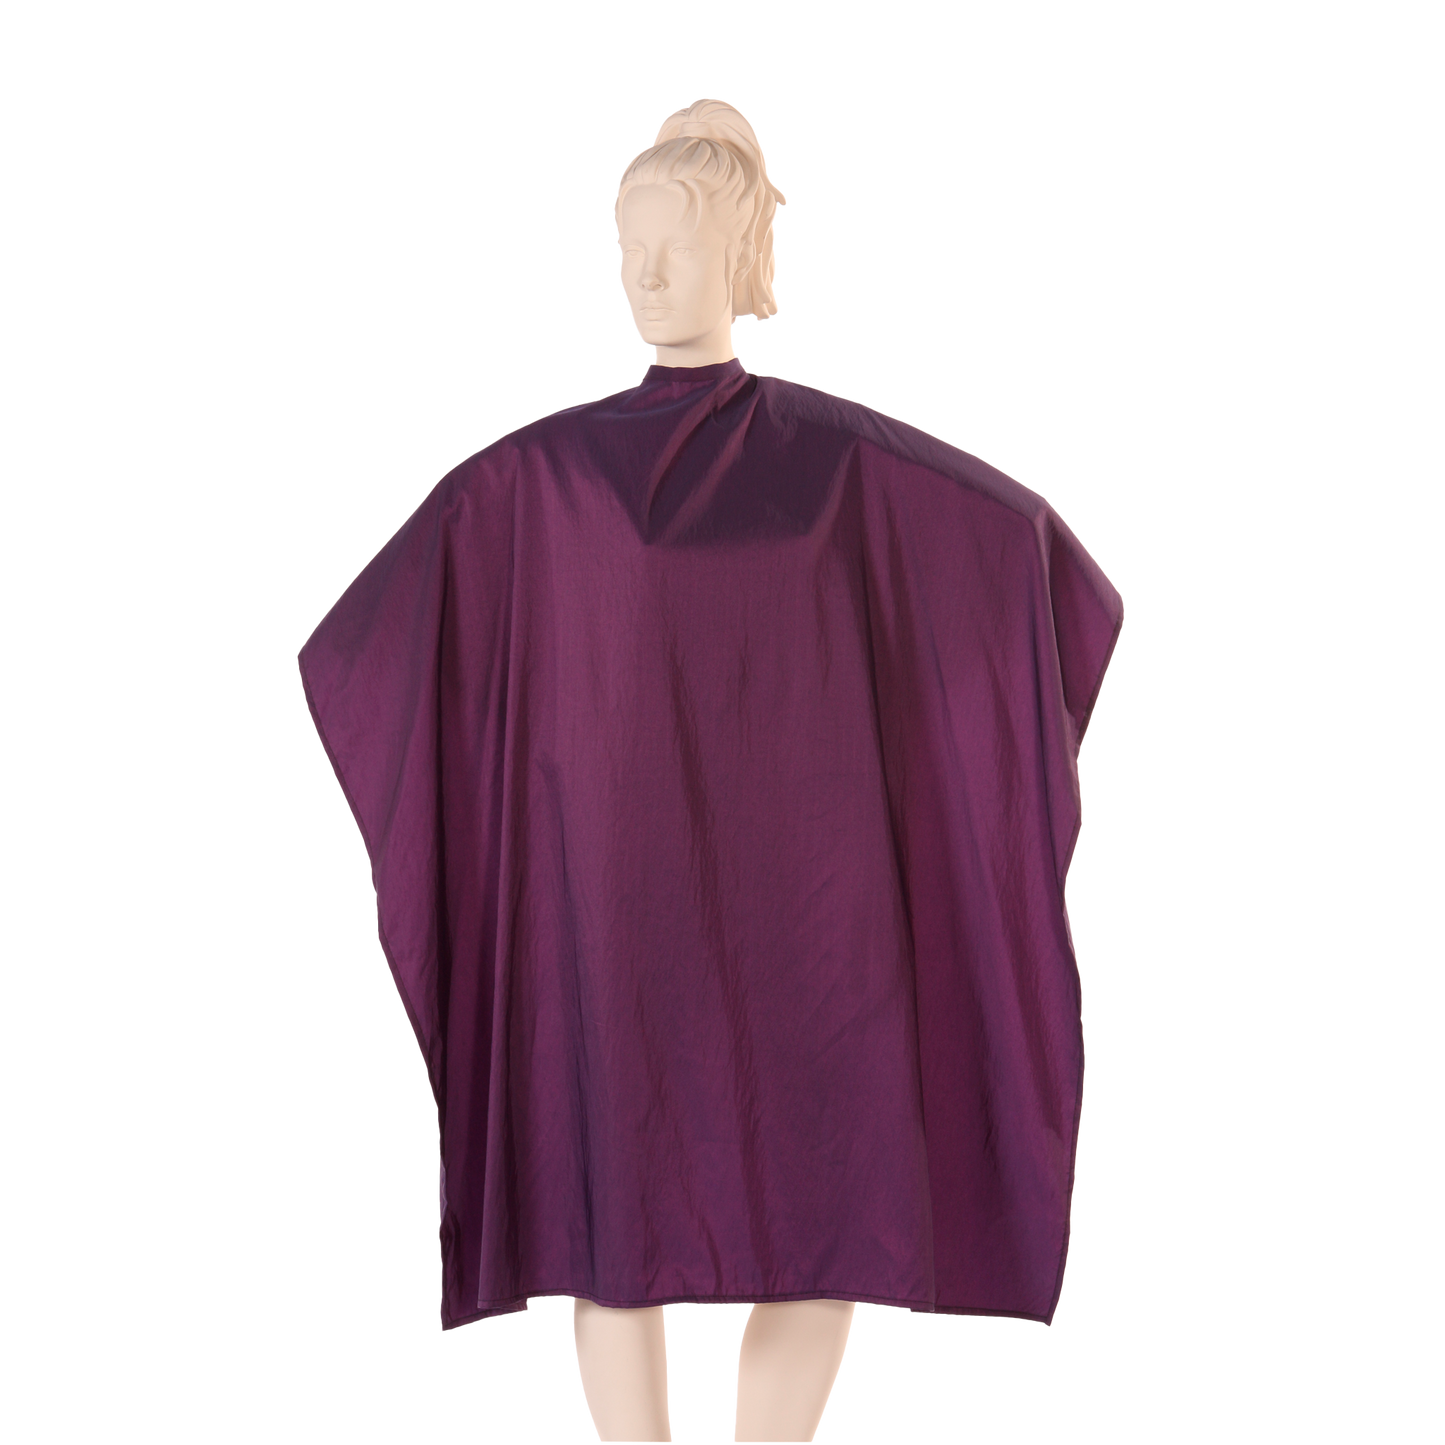 Multi-Purpose Salon Cape in Wineberry Iridescent Silkara Fabric